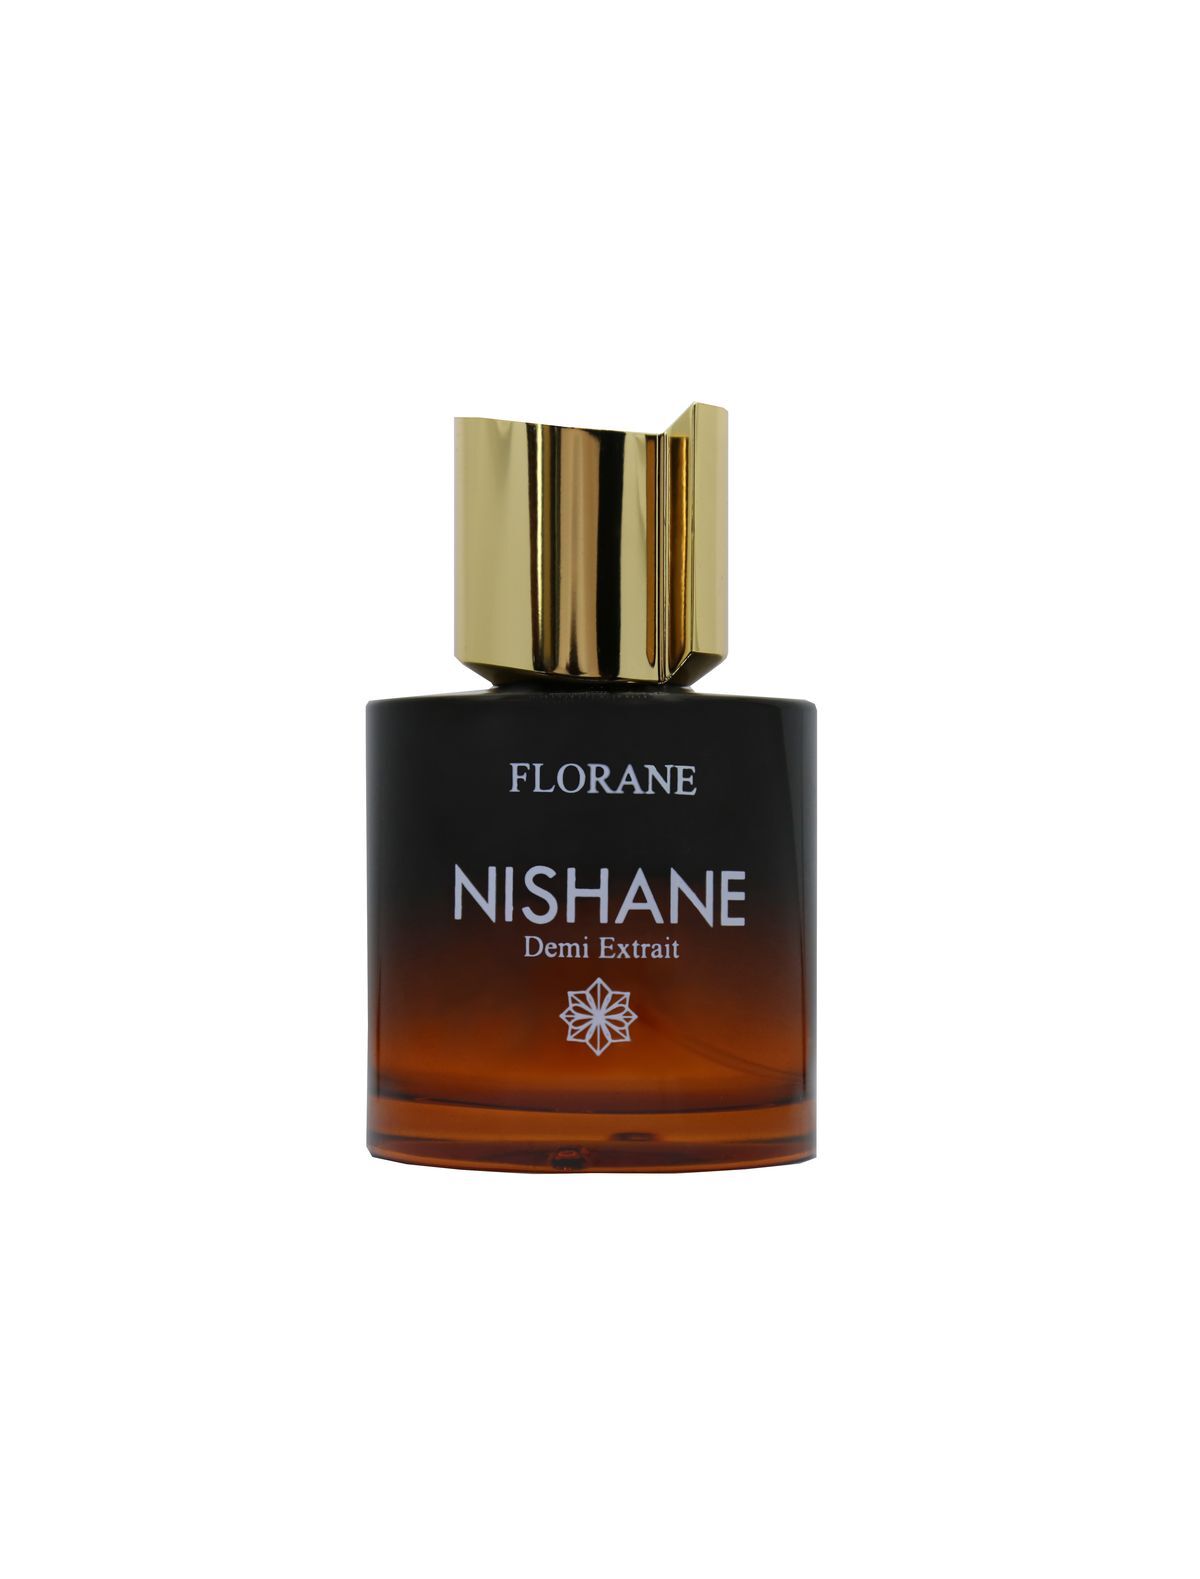 Nishane Florane Demi Extrait De Cologne 100ml | City Perfume